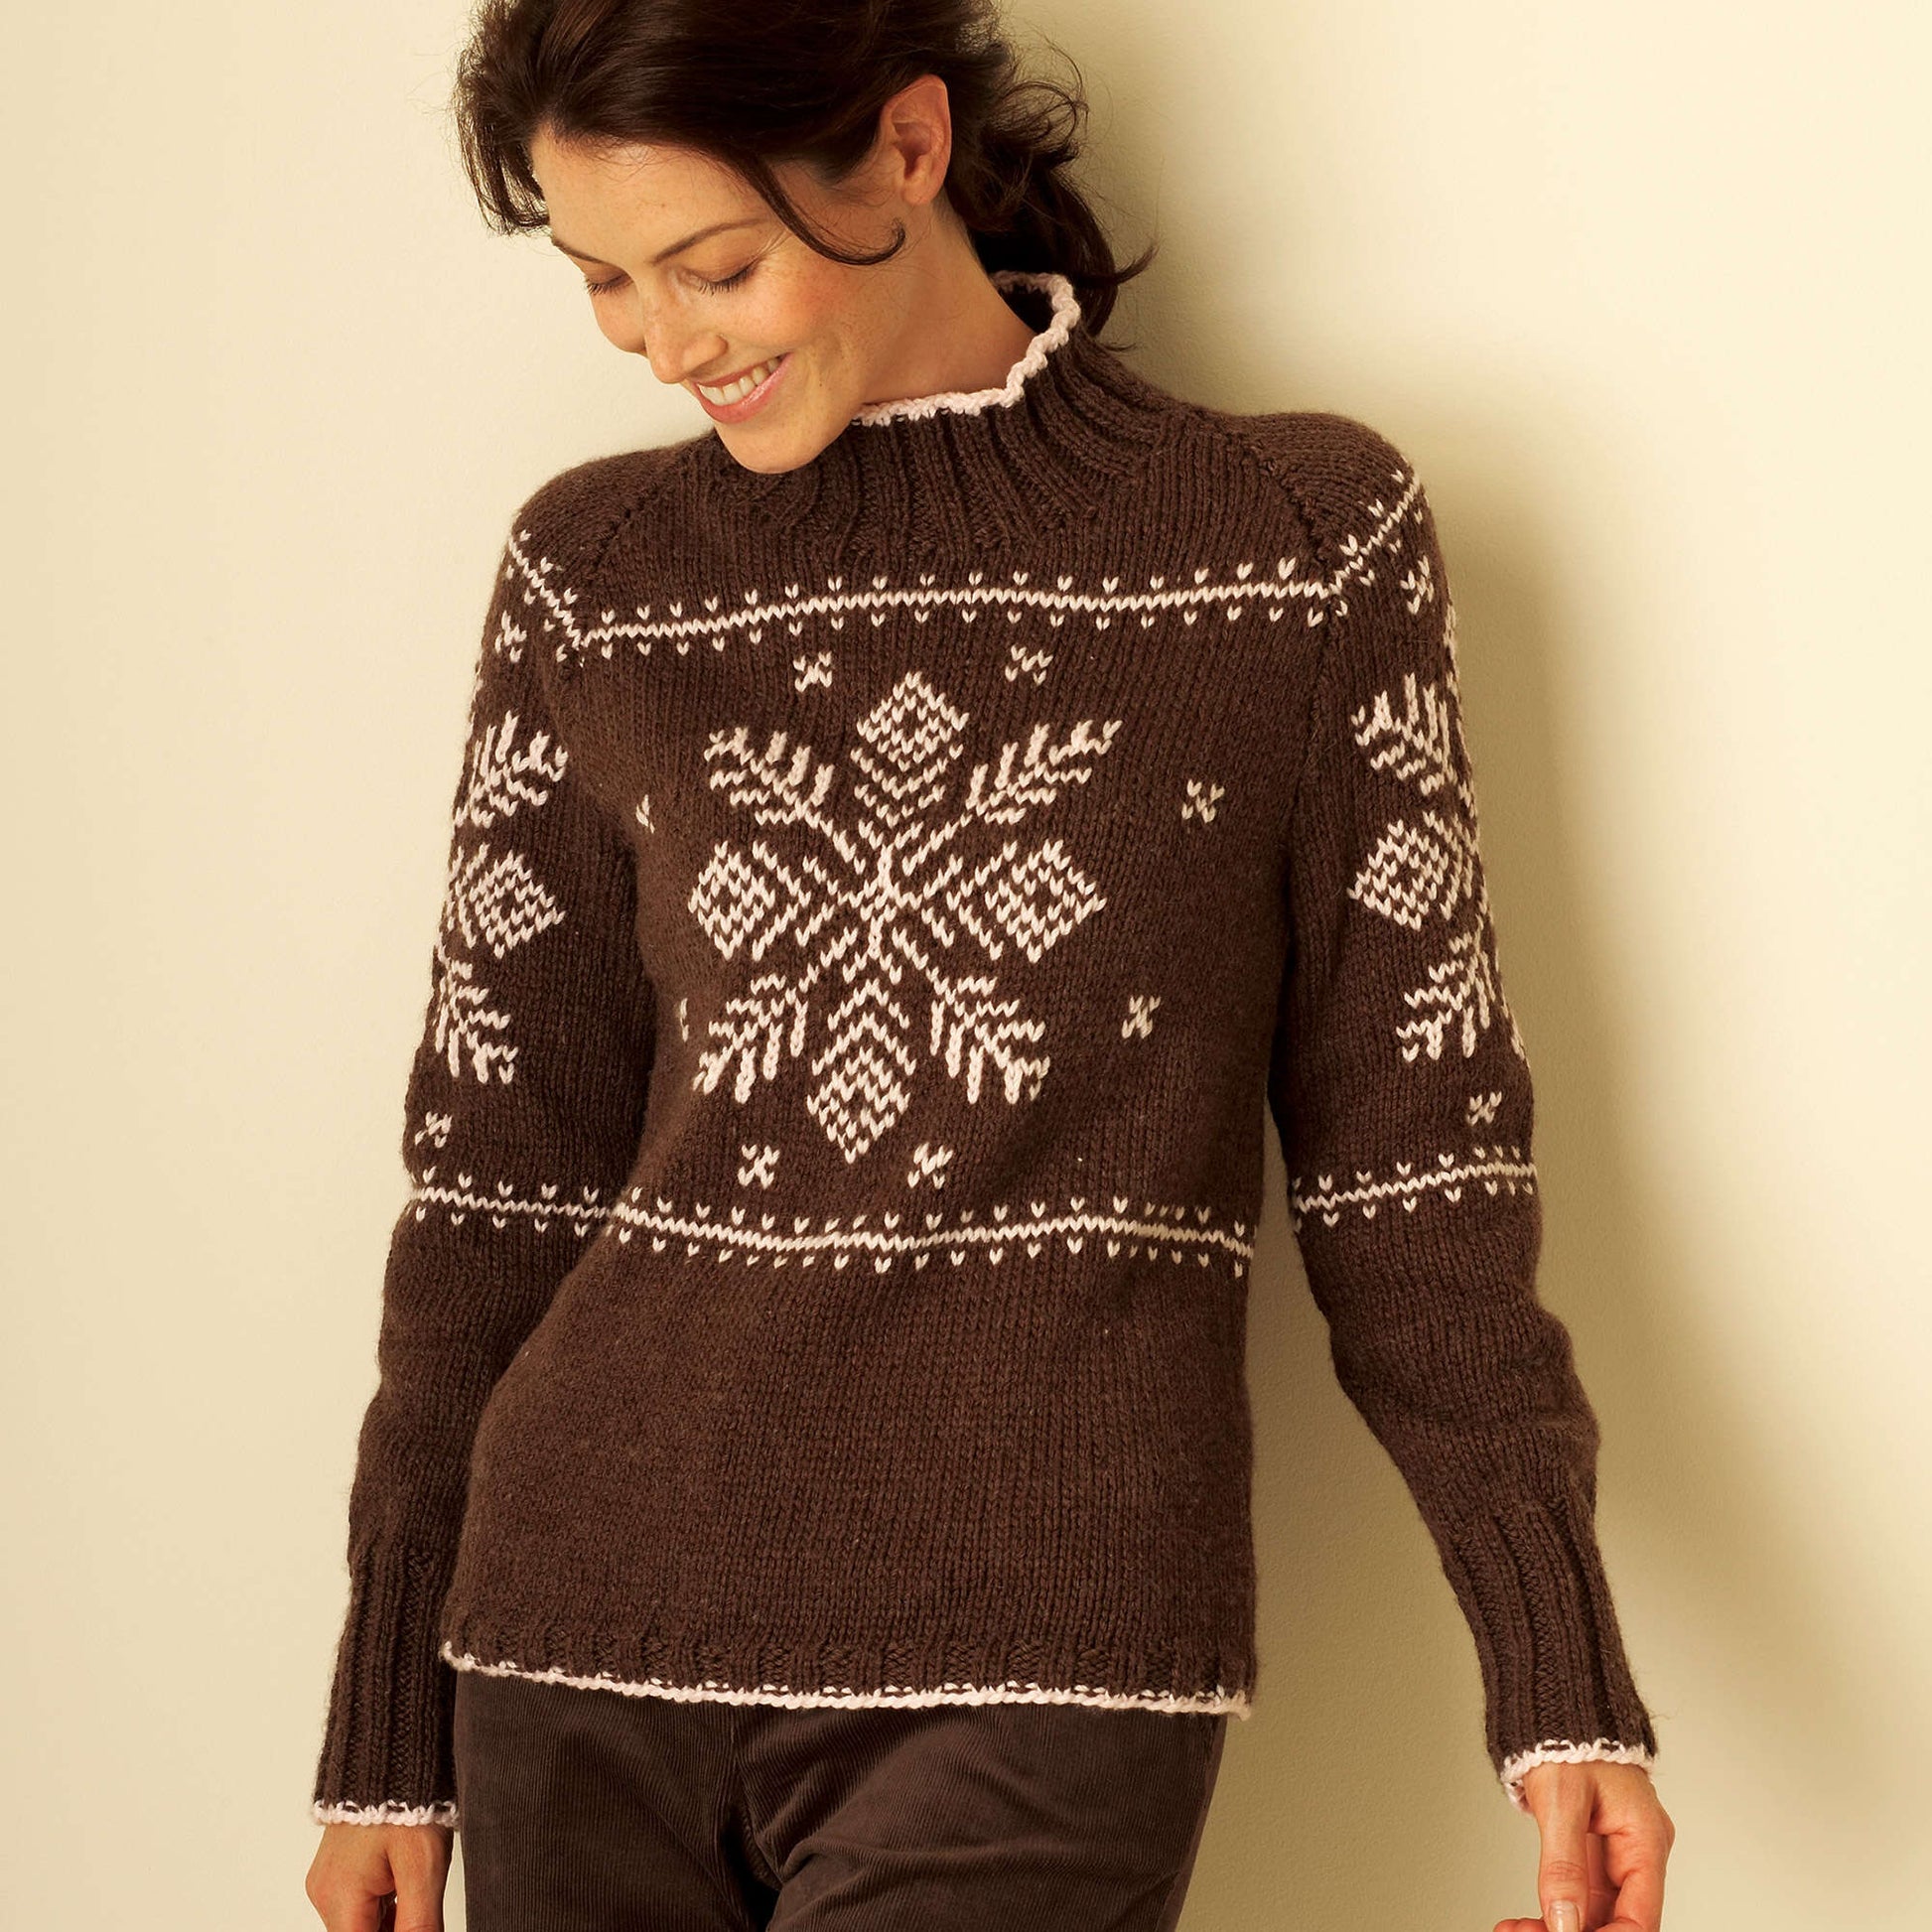 Free Bernat Snowflake Sweater Knit Pattern